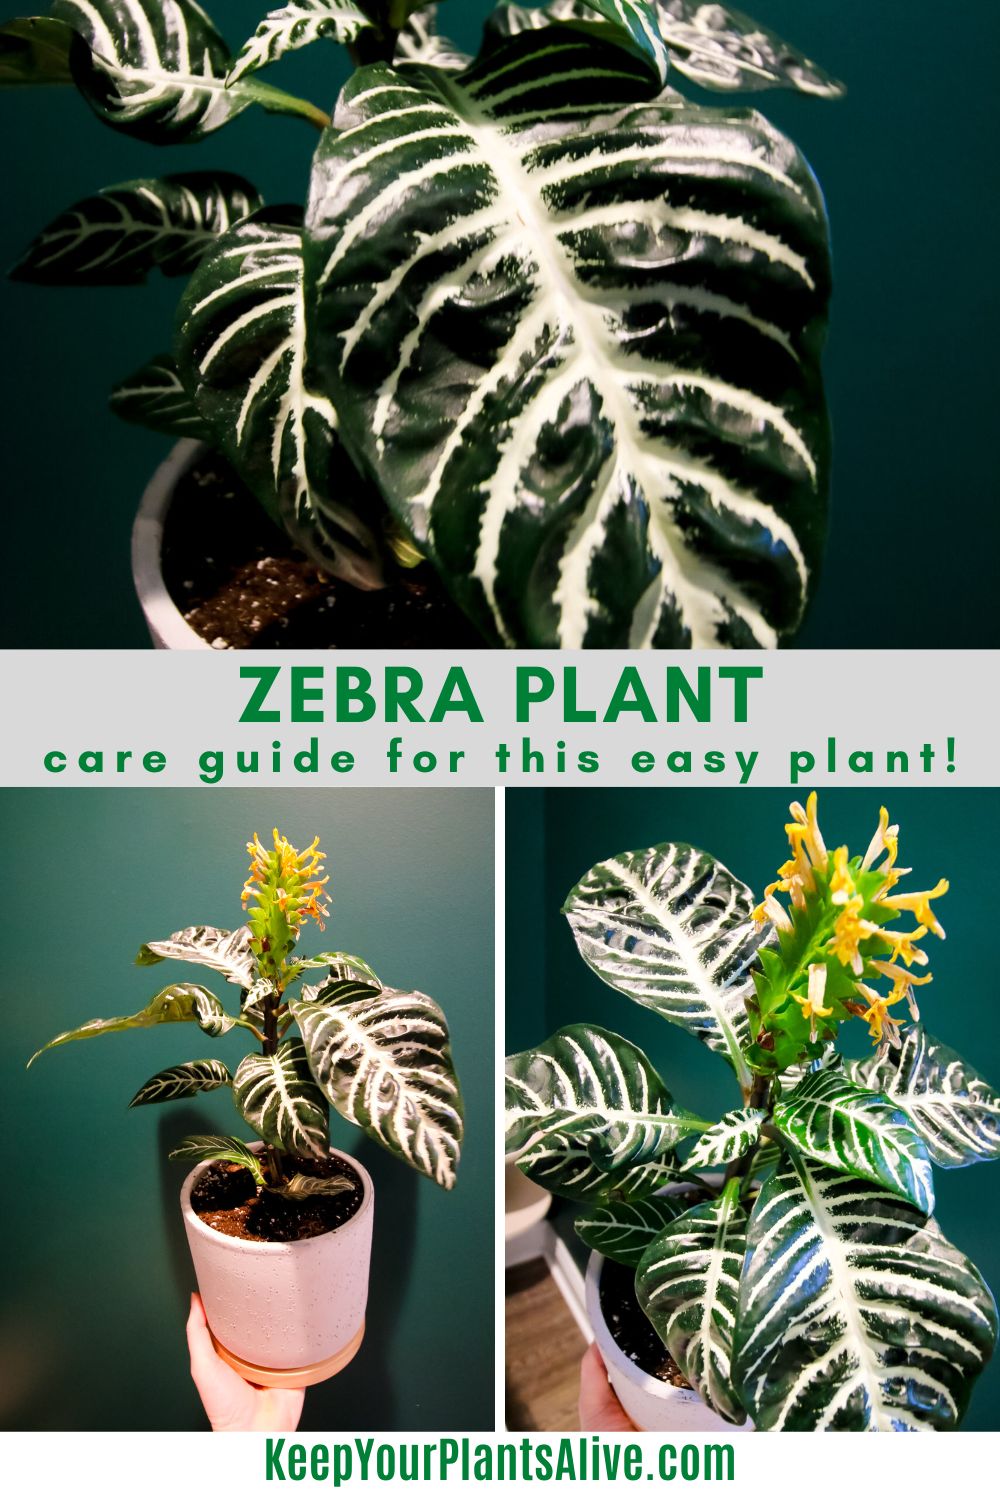 Zebra plant care guide